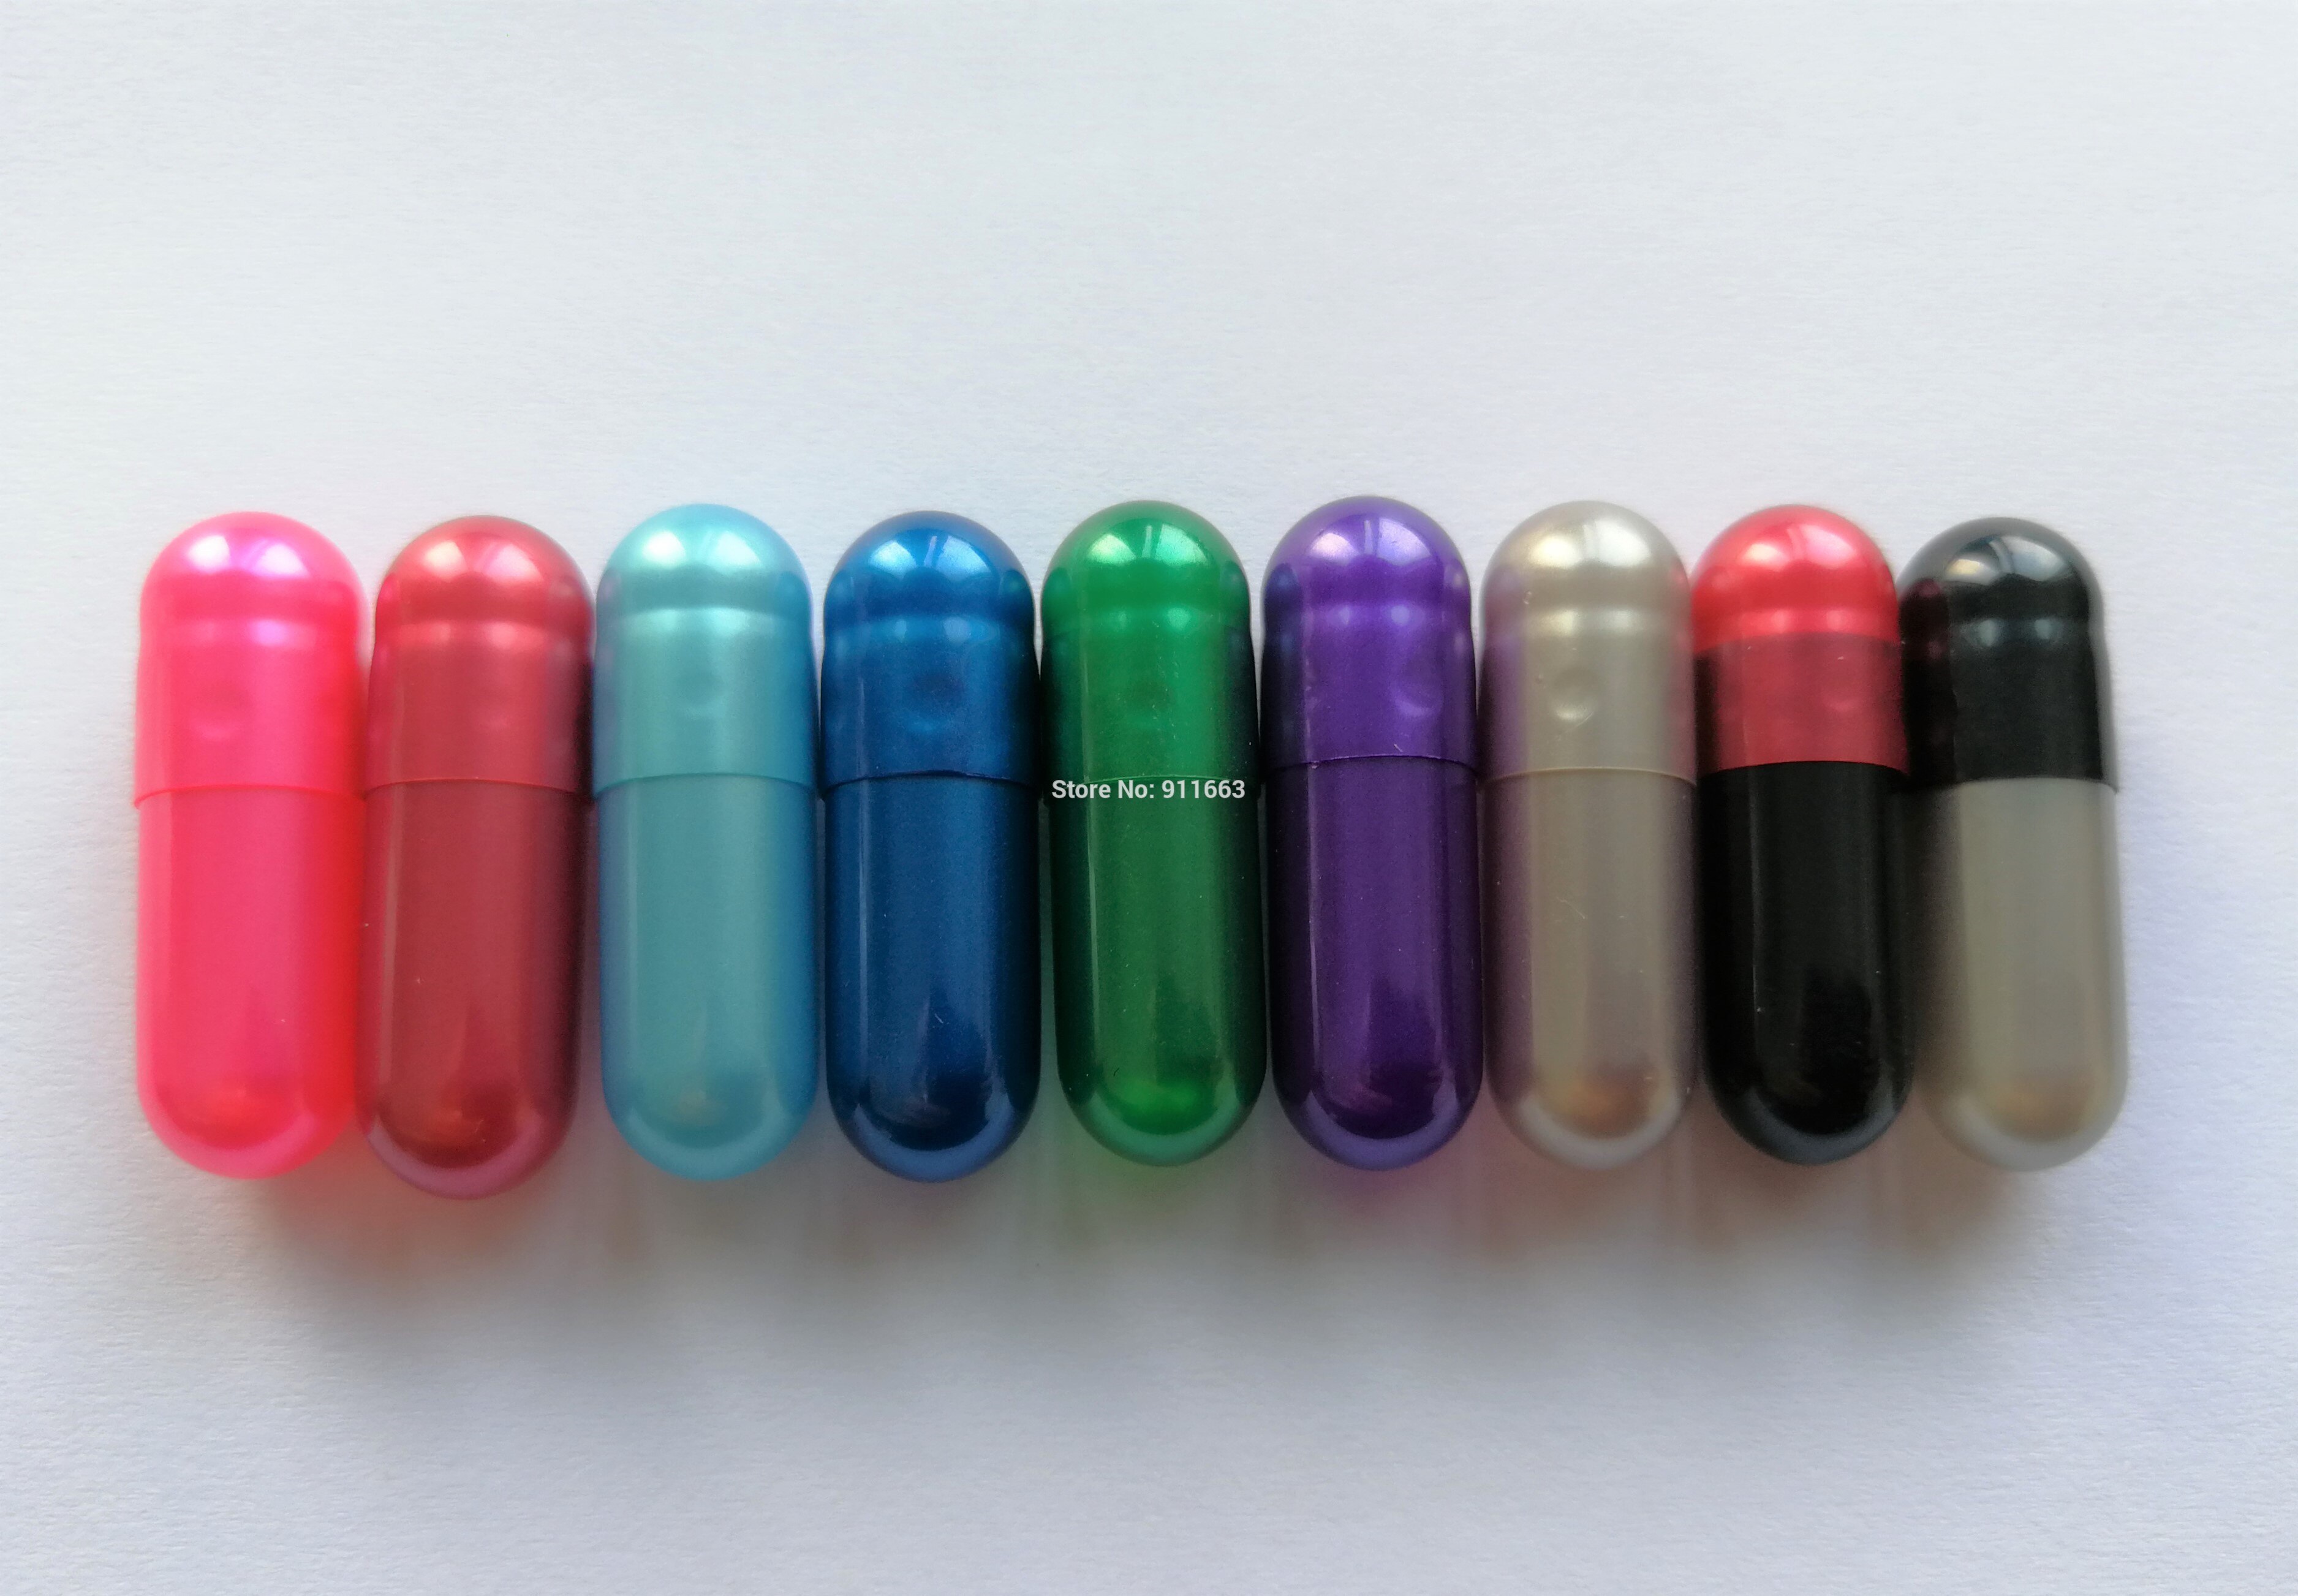 00# Pearl capsule 1,000pcs! Pearl colores Gelati empty capsules ,Hard gelatin empty capsule(joined or seperated empty capsules)!